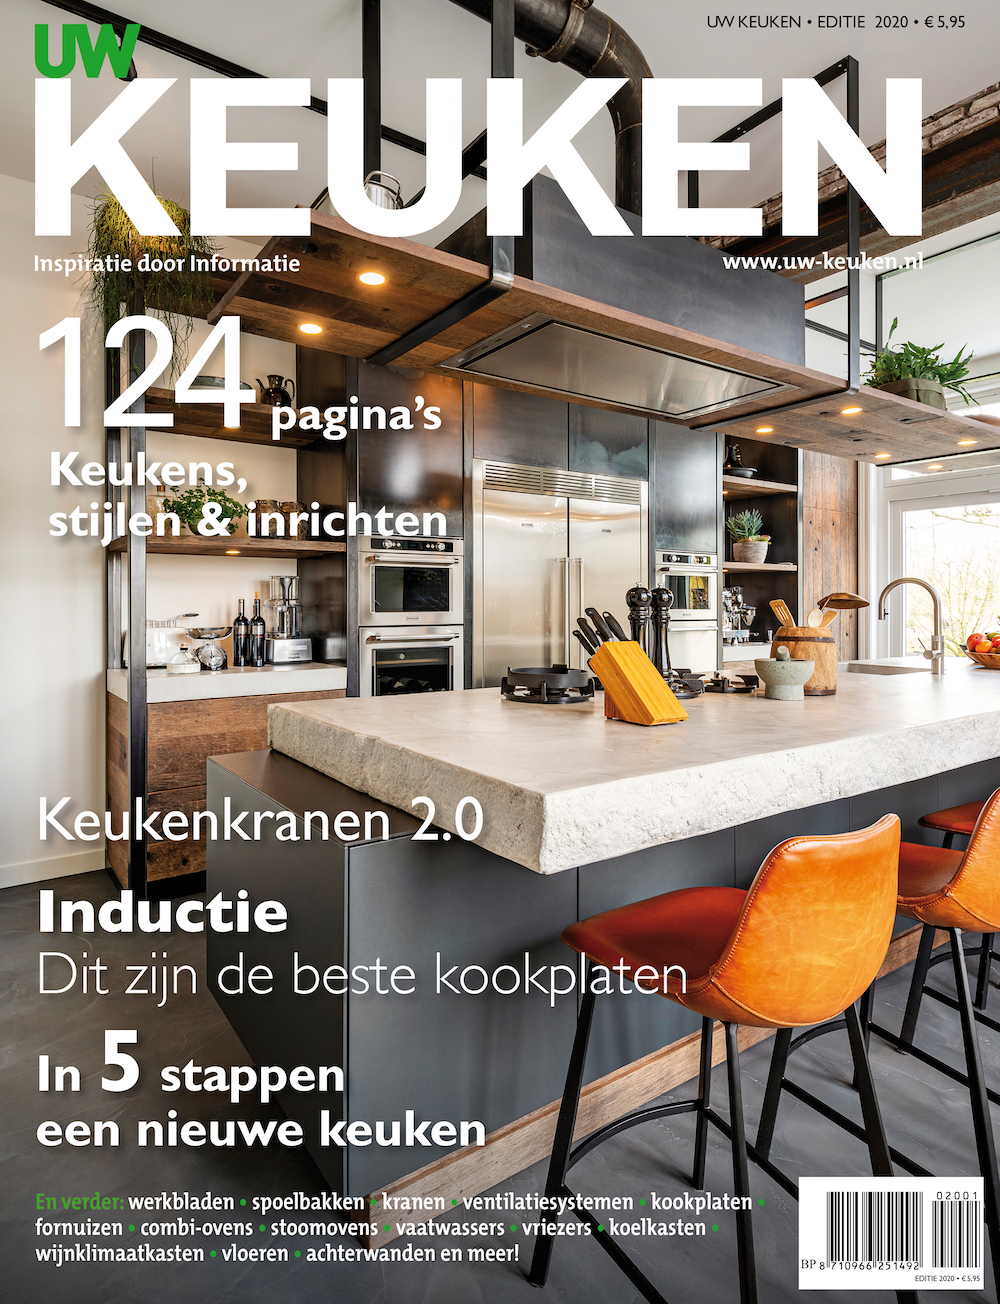 Keukenmagazine UW Keuken. Informatie en keukeninspiratie #keuken #magazine